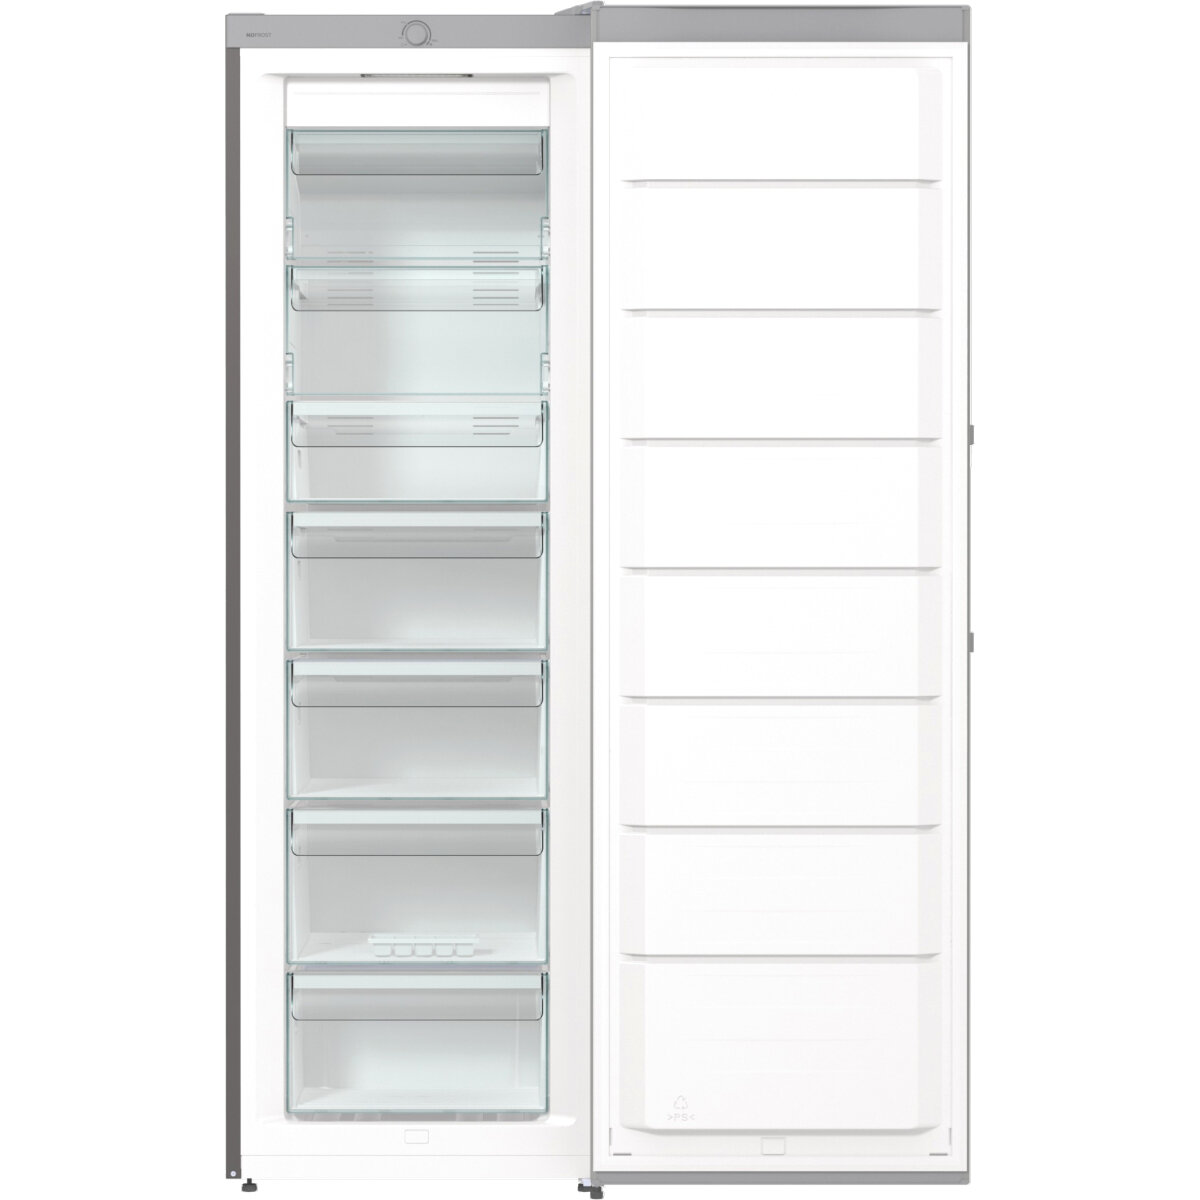 Холодильник/ Морозильный шкаф, Климатический класс: SN, N, ST, T, Класс энергопотребления: A+, 1 компрессор, Общий объем 280 л, Серебристый металлик - фотография № 4